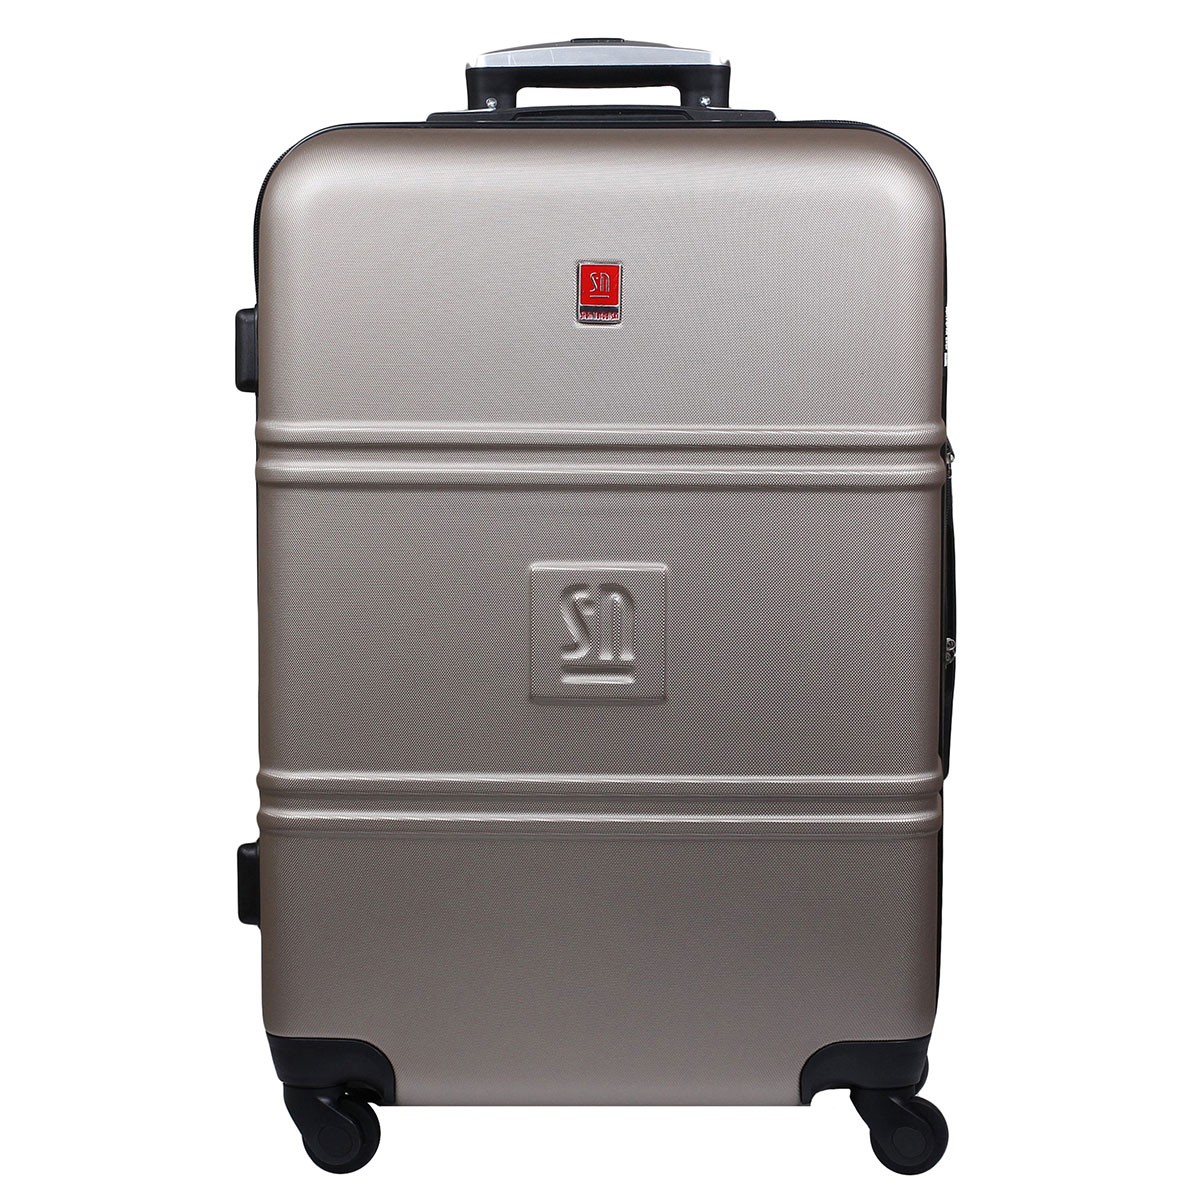 bezowa-walizka-duza-ABS-04-0401S-15.jpg